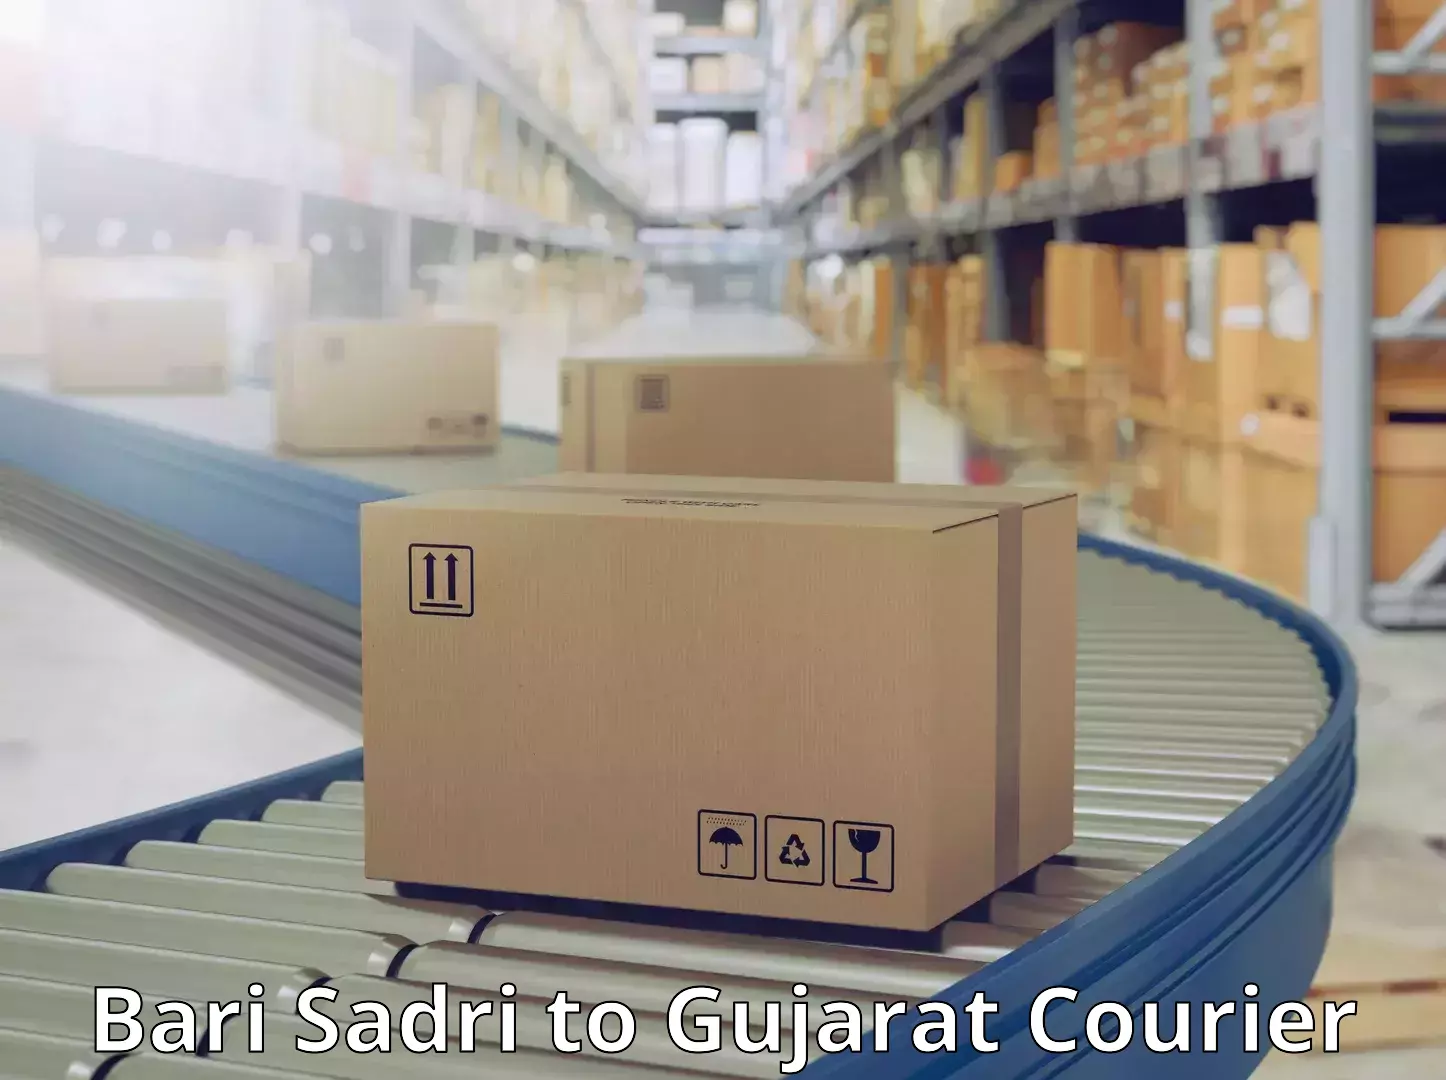 Fast shipping solutions Bari Sadri to Patdi